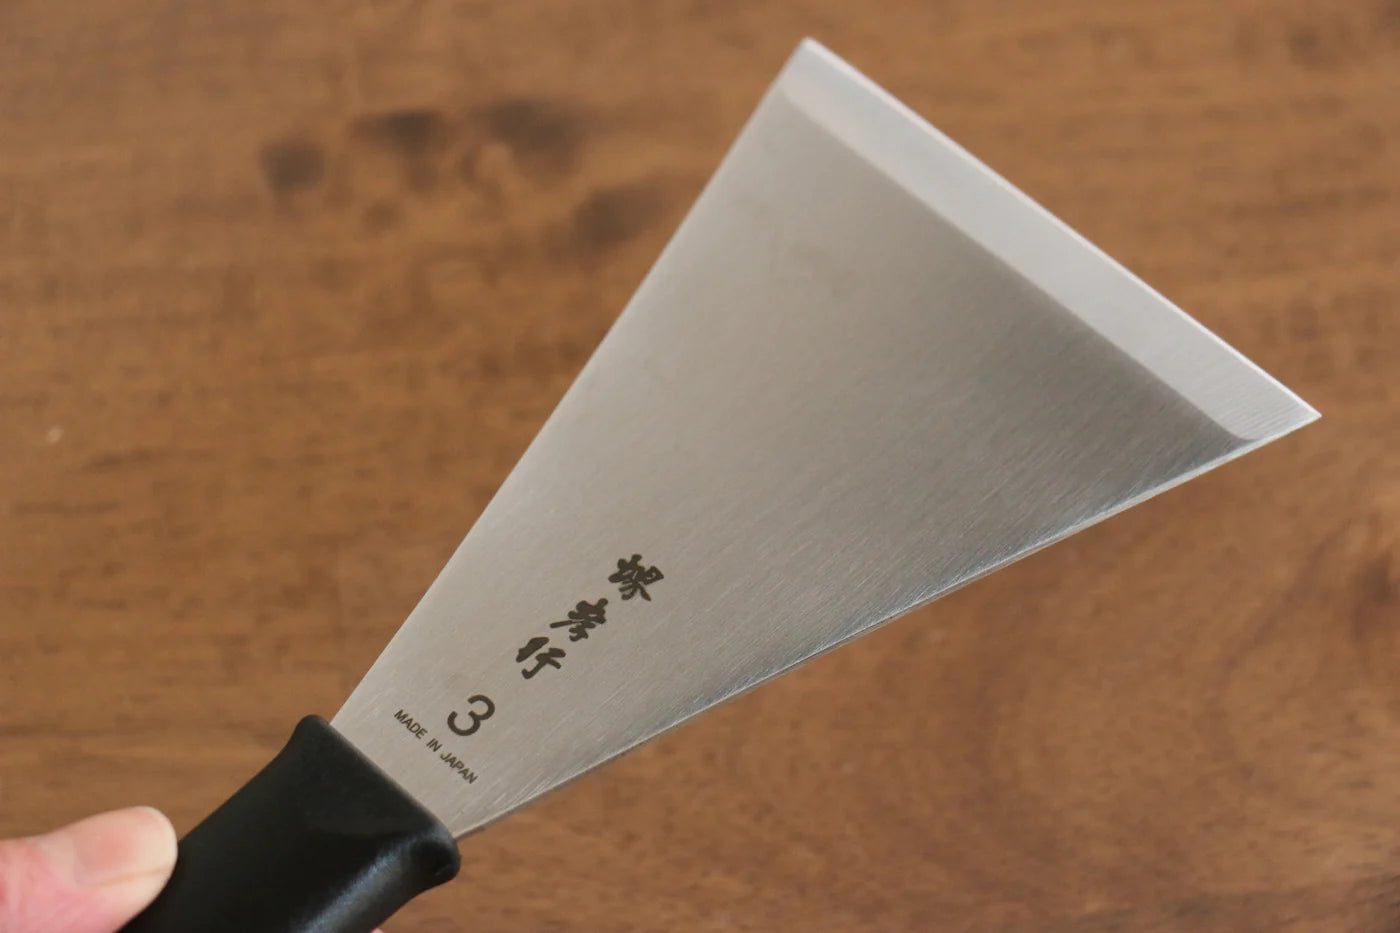 Marke Sakai Takayuki Japanisches Palettenmesser aus Edelstahl, 120 mm